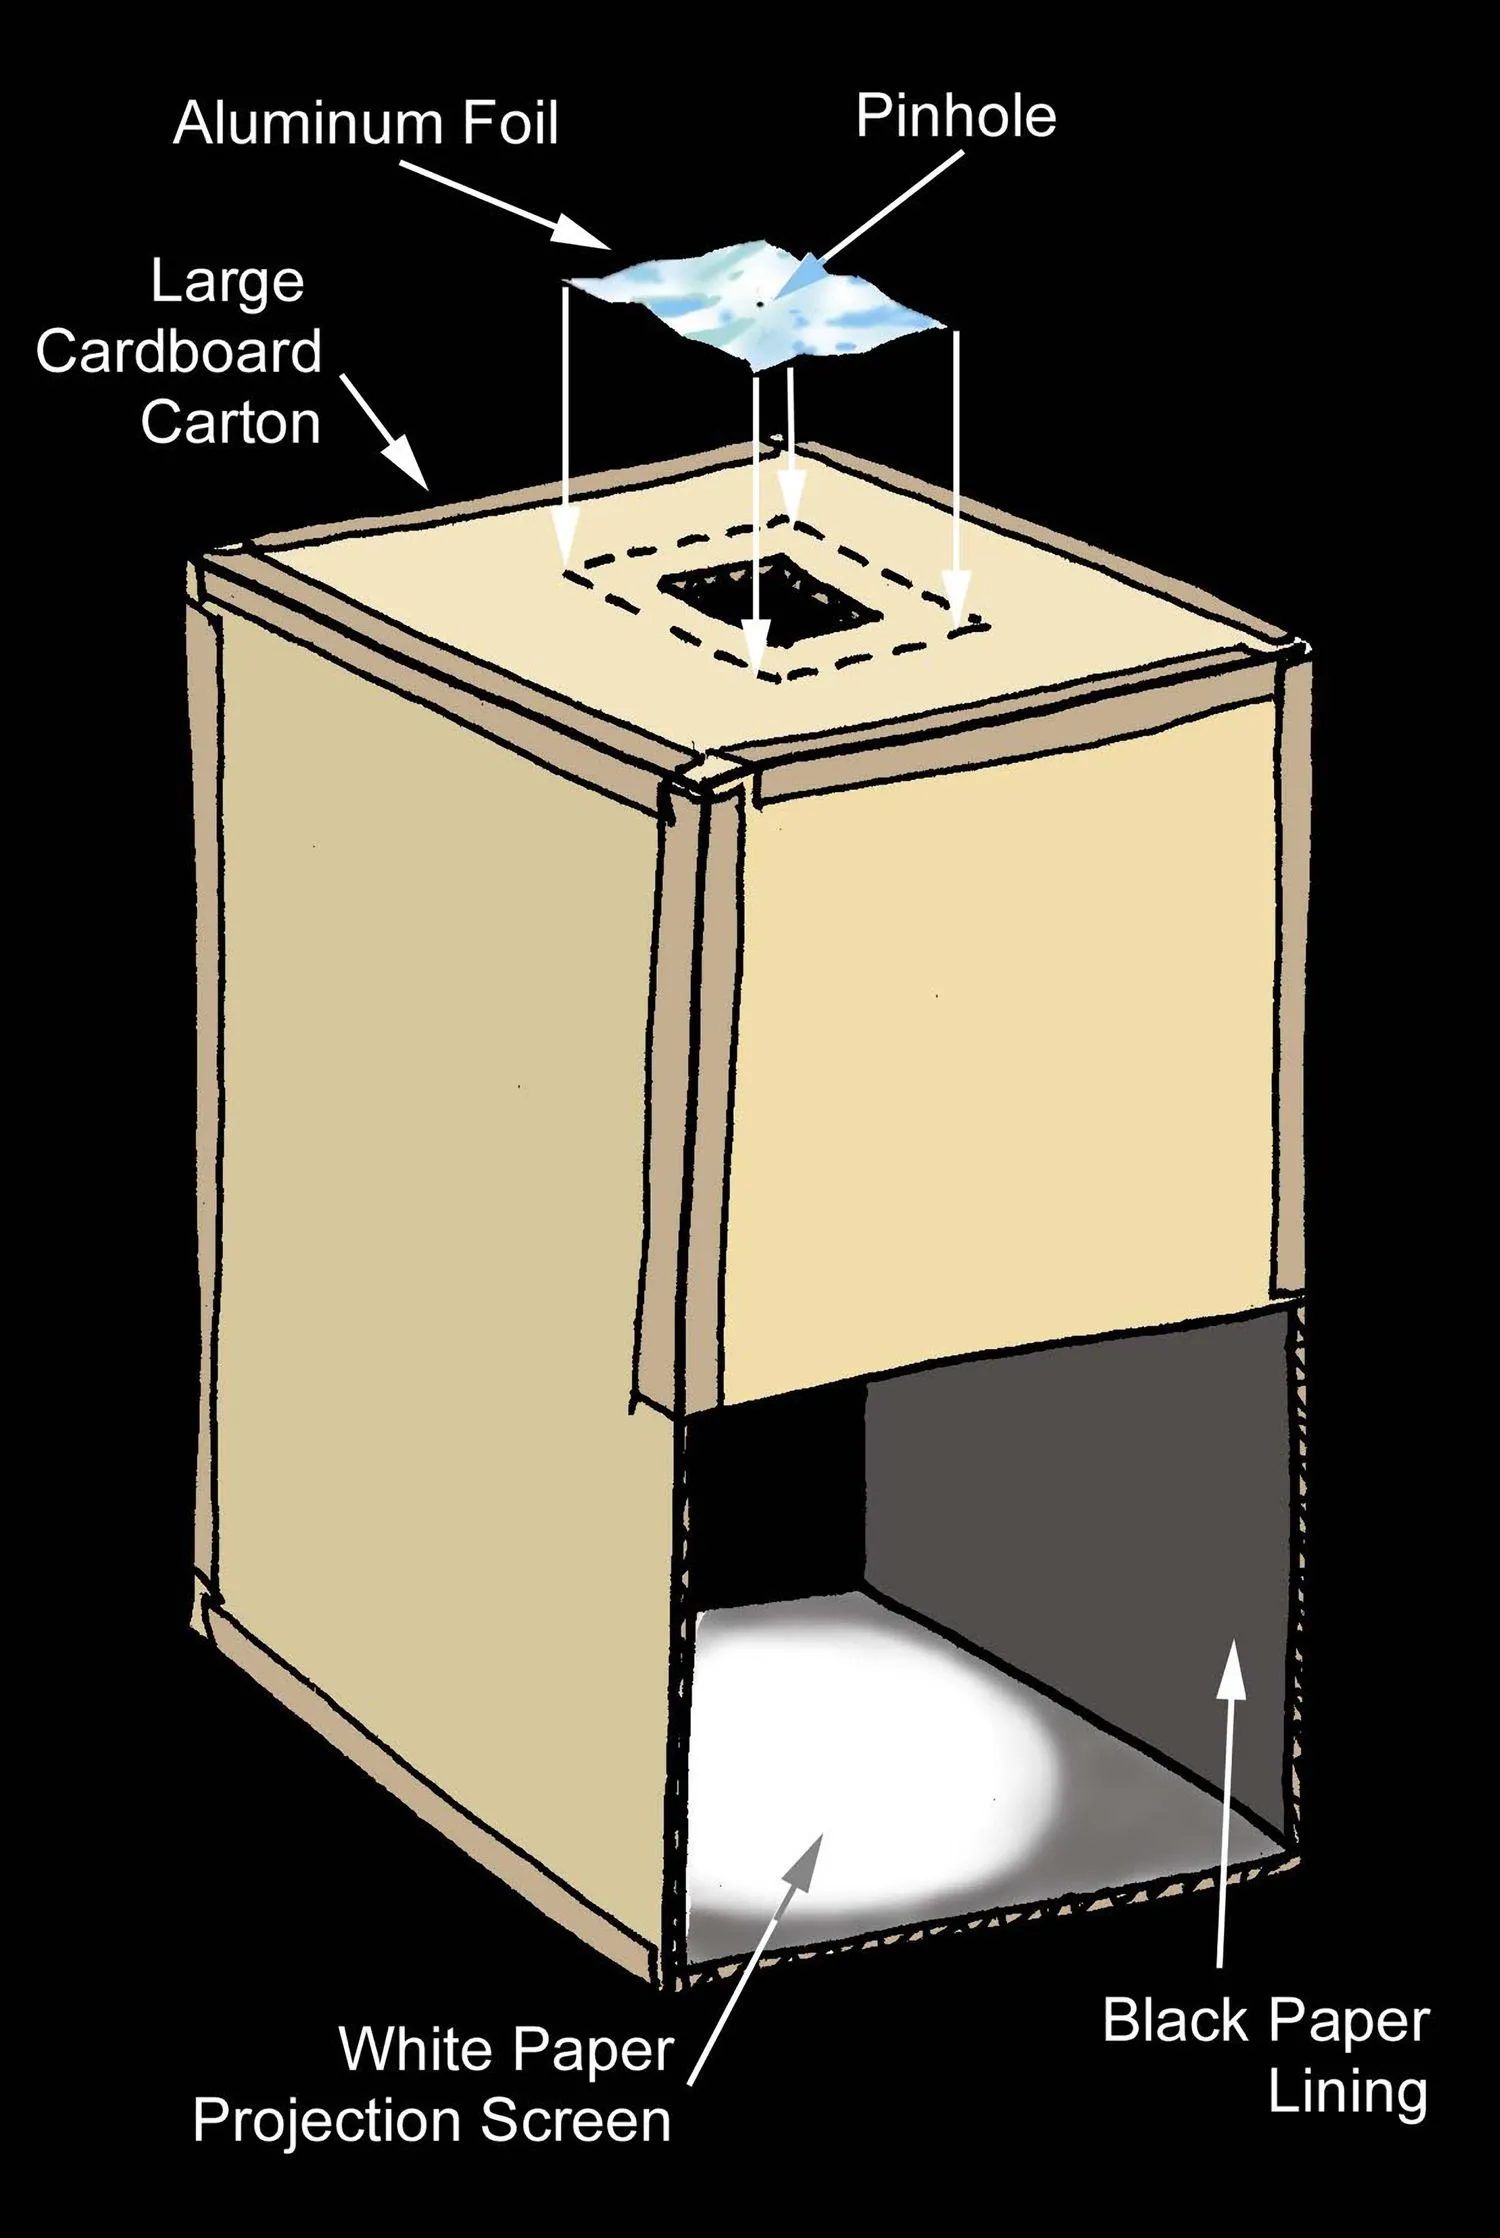 Diagramm eines Kartons mit einer Lochblende in Alufolie an einem Ende und einem Projektorbildschirm am anderen Ende sowie einem Spalt an der Seite, durch den man den Projektorbildschirm sehen kann.